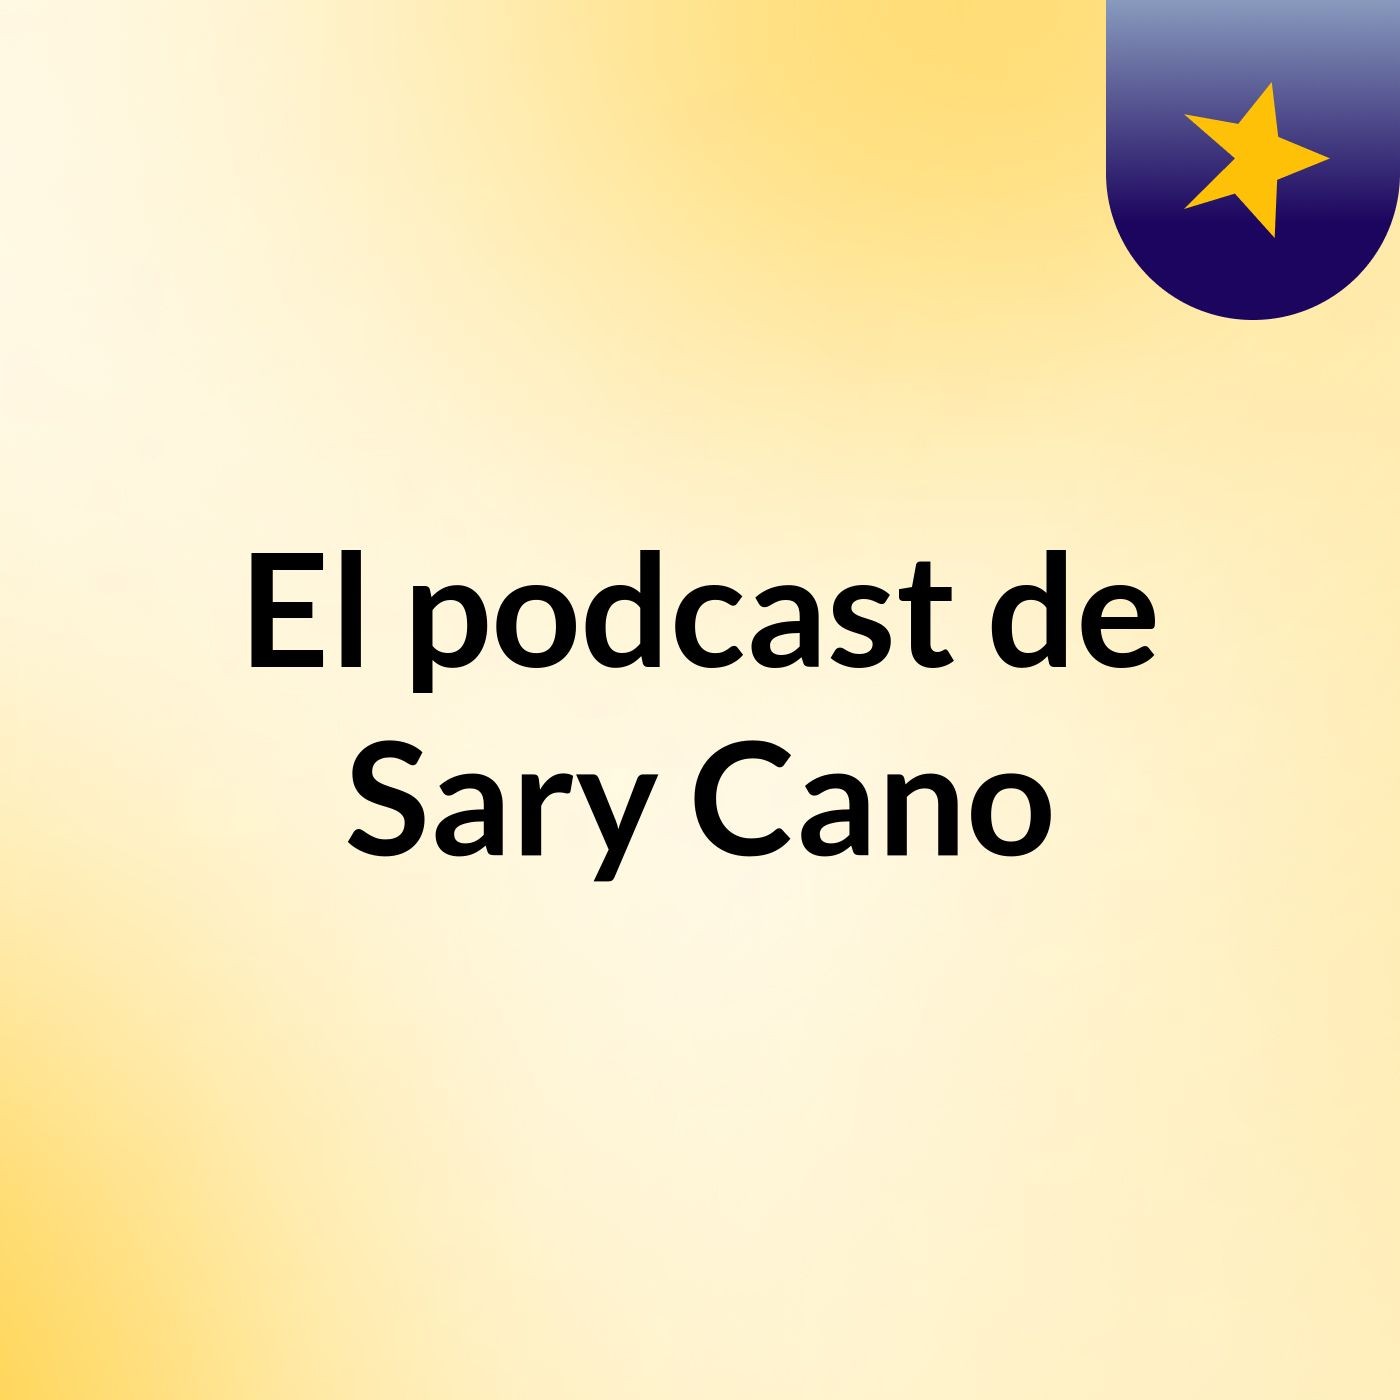 Episodio 2 - El podcast de Sary Cano